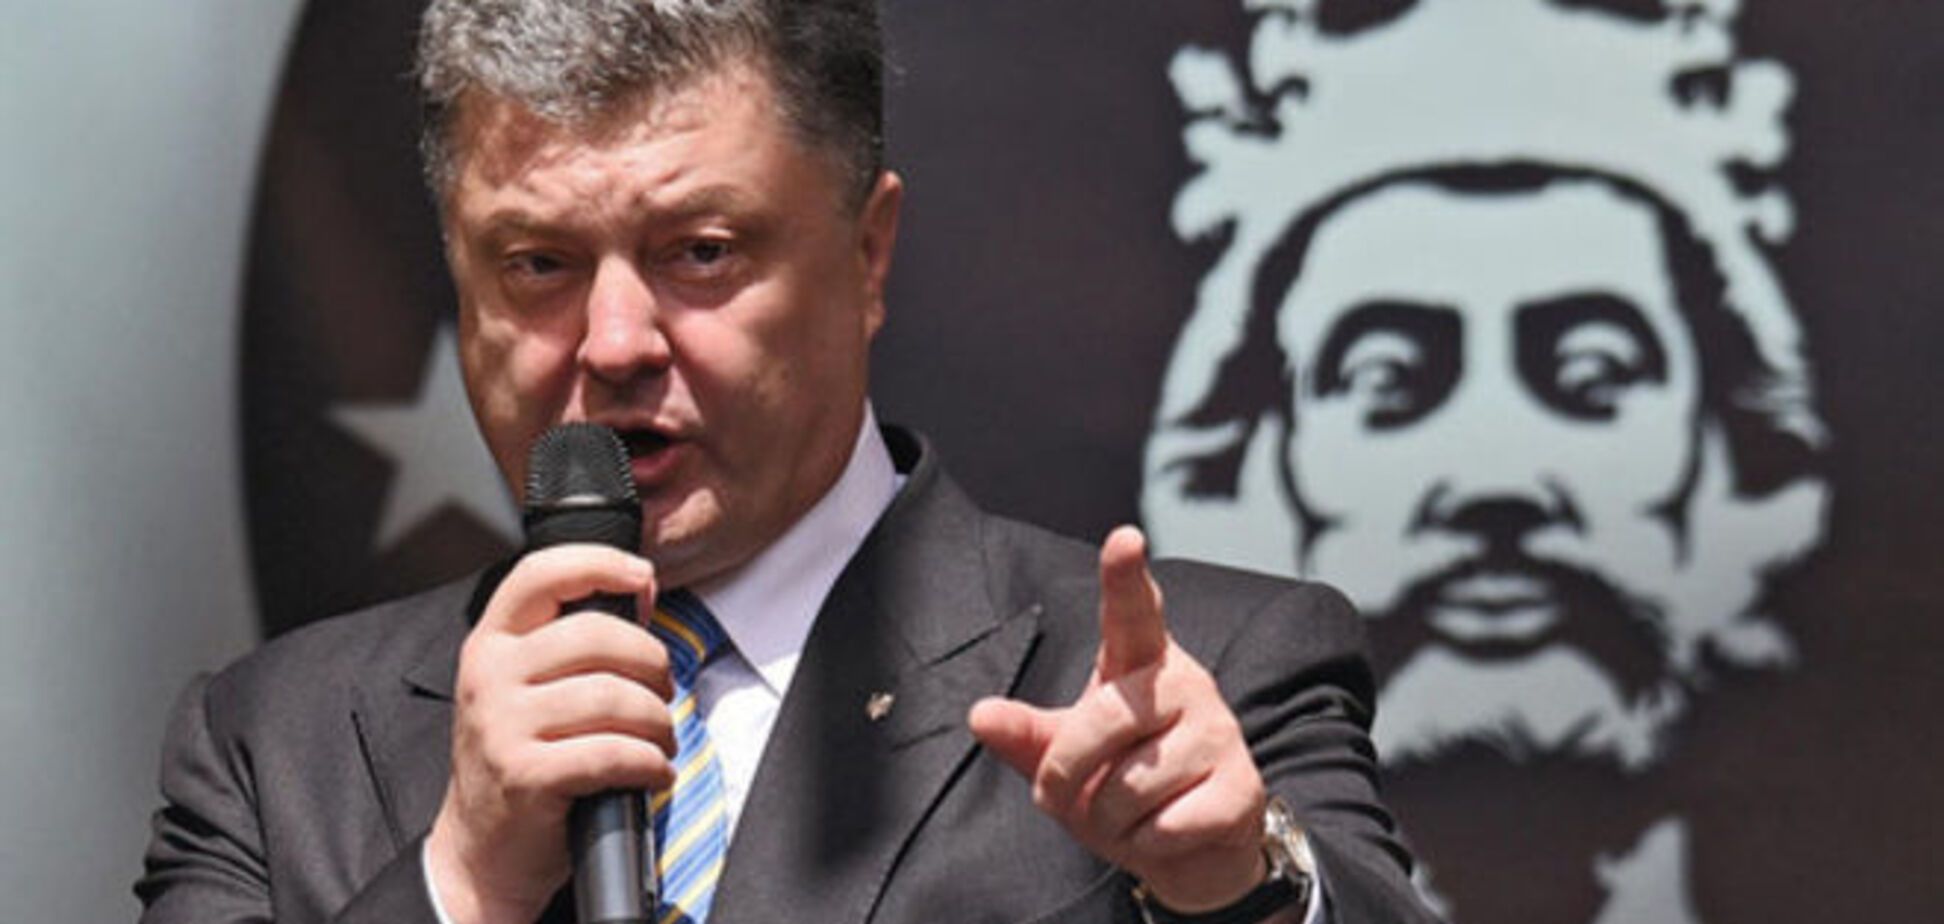 ЕС проверит готовность Киева к безвизовому режиму - Порошенко